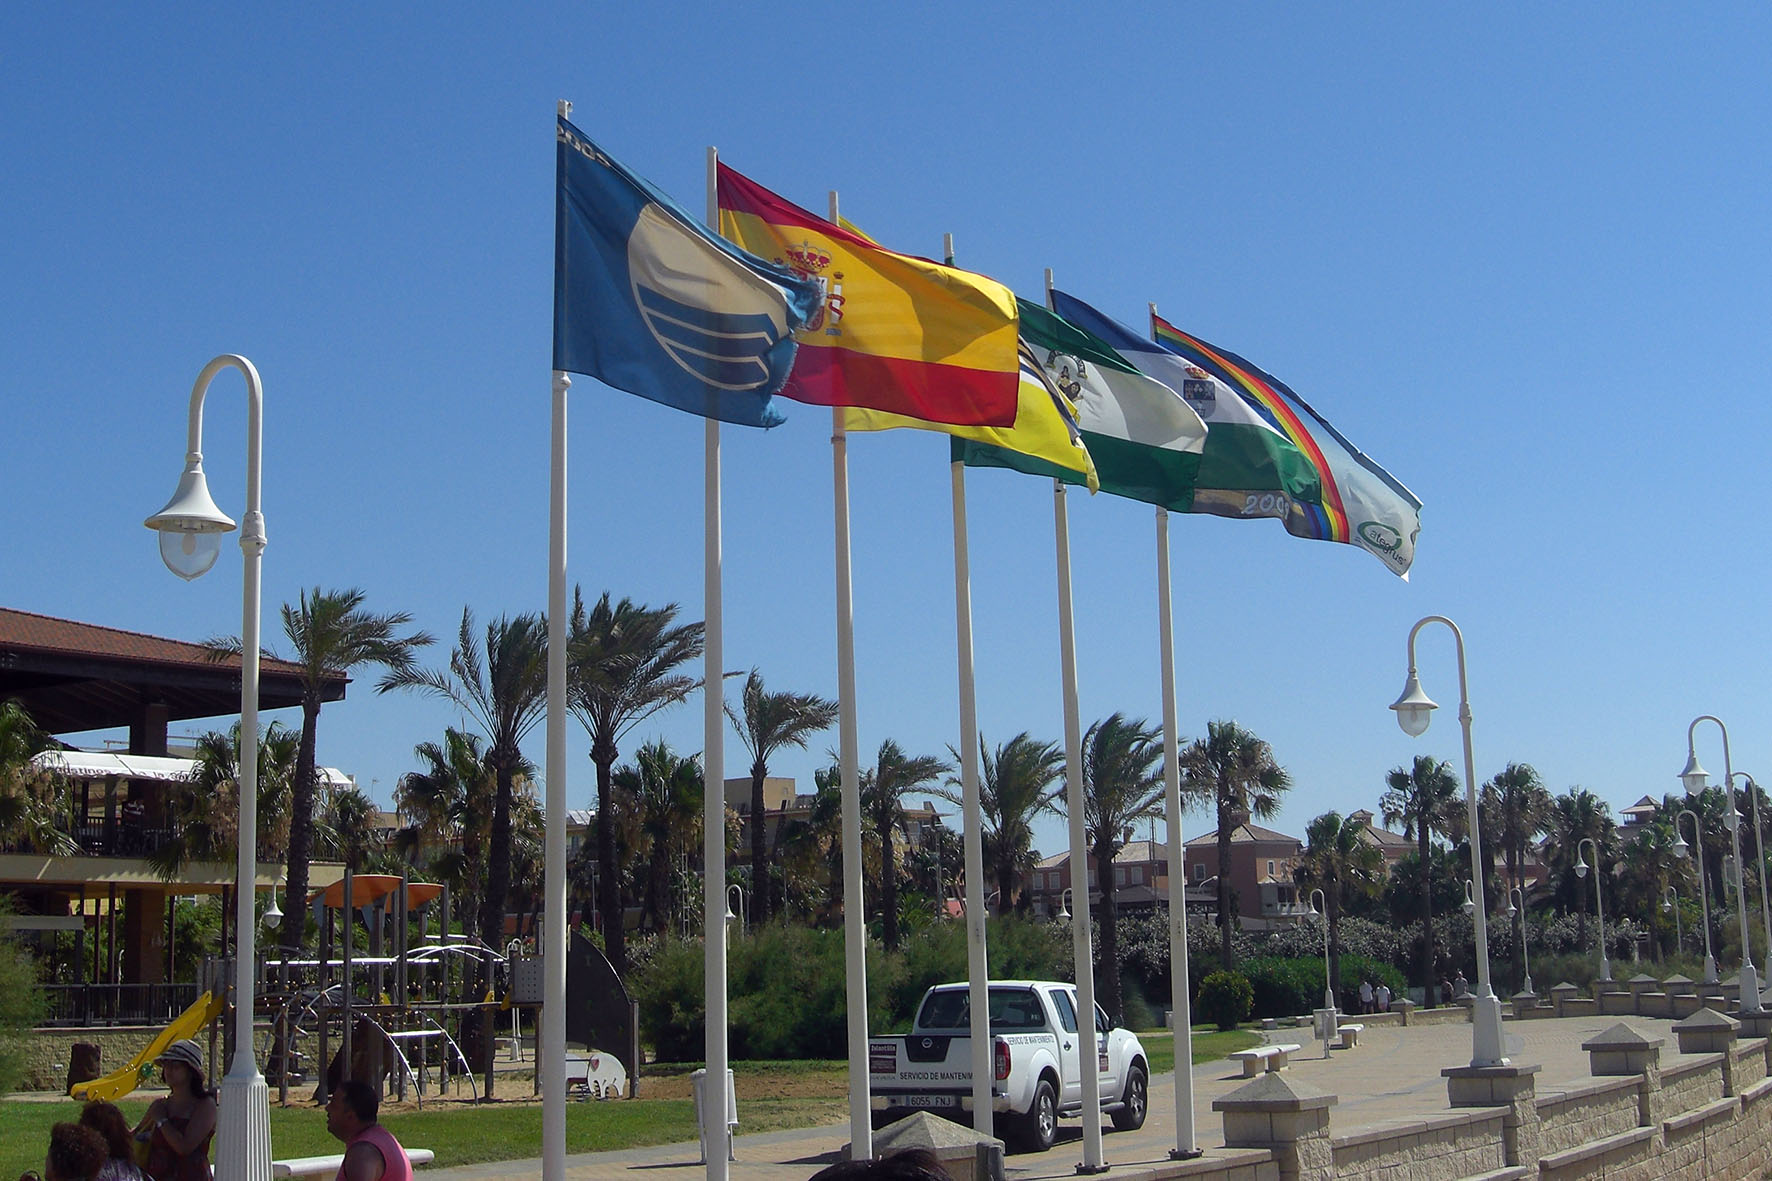 Las playas y puertos deportivos de Huelva obtienen 16 Banderas Azules en 2021